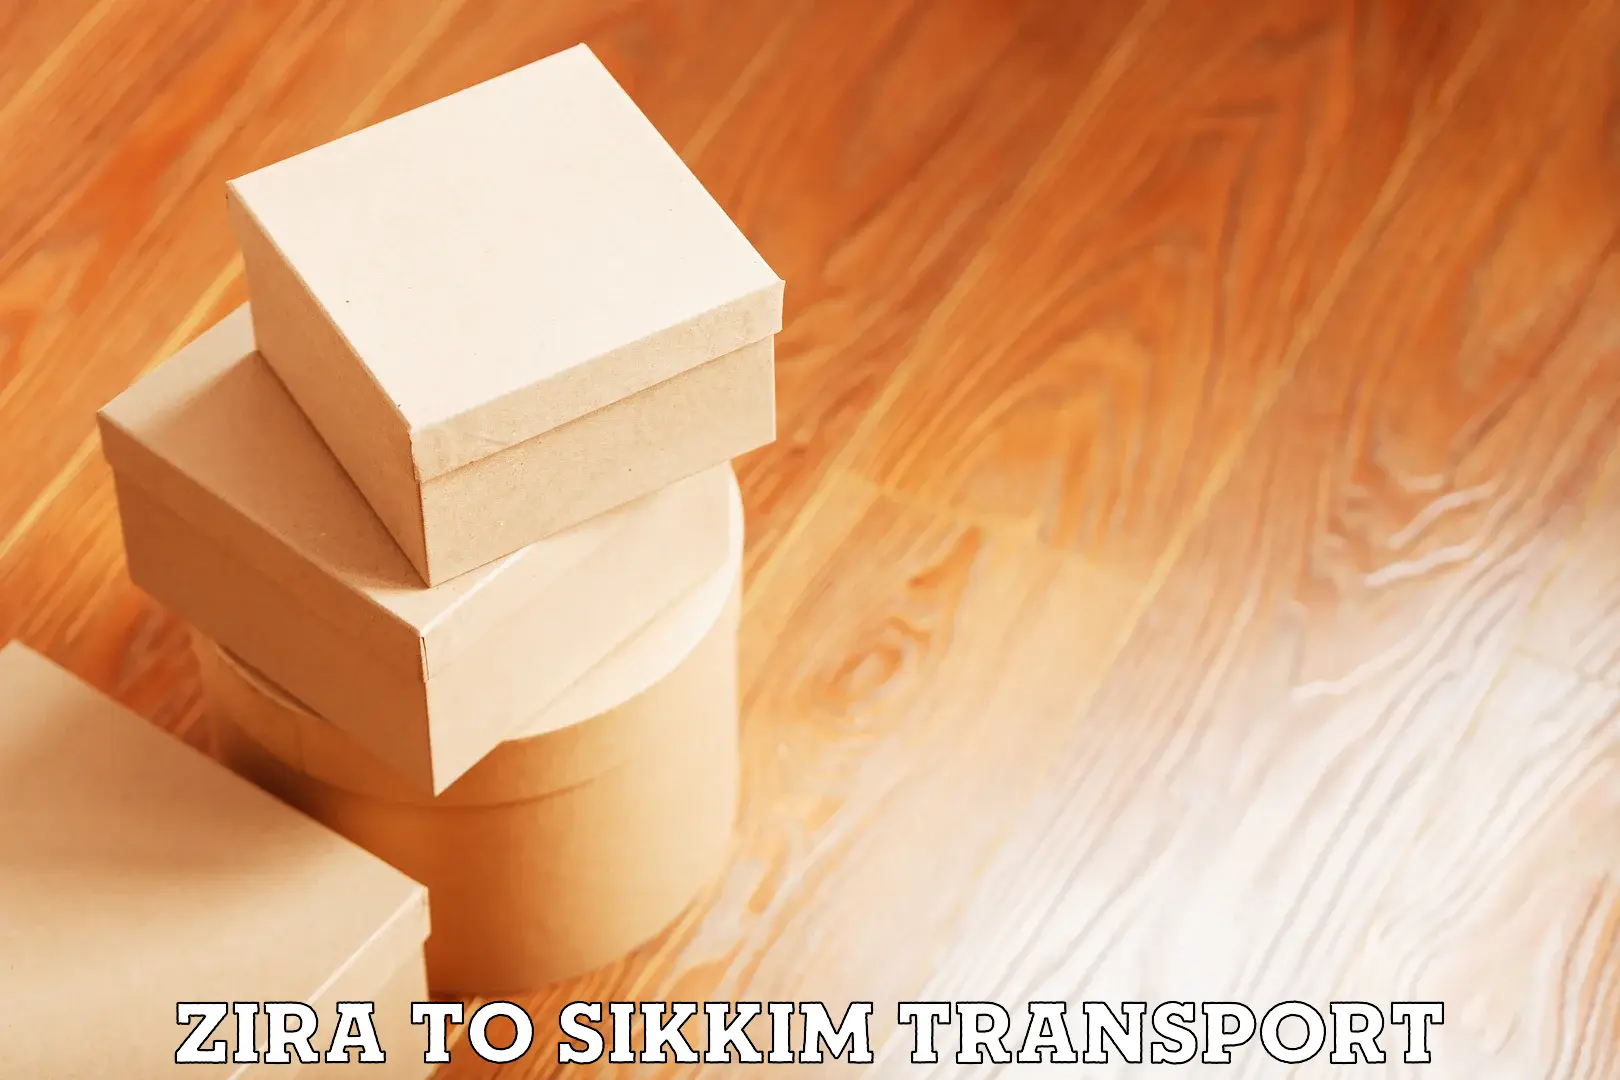 Online transport Zira to East Sikkim